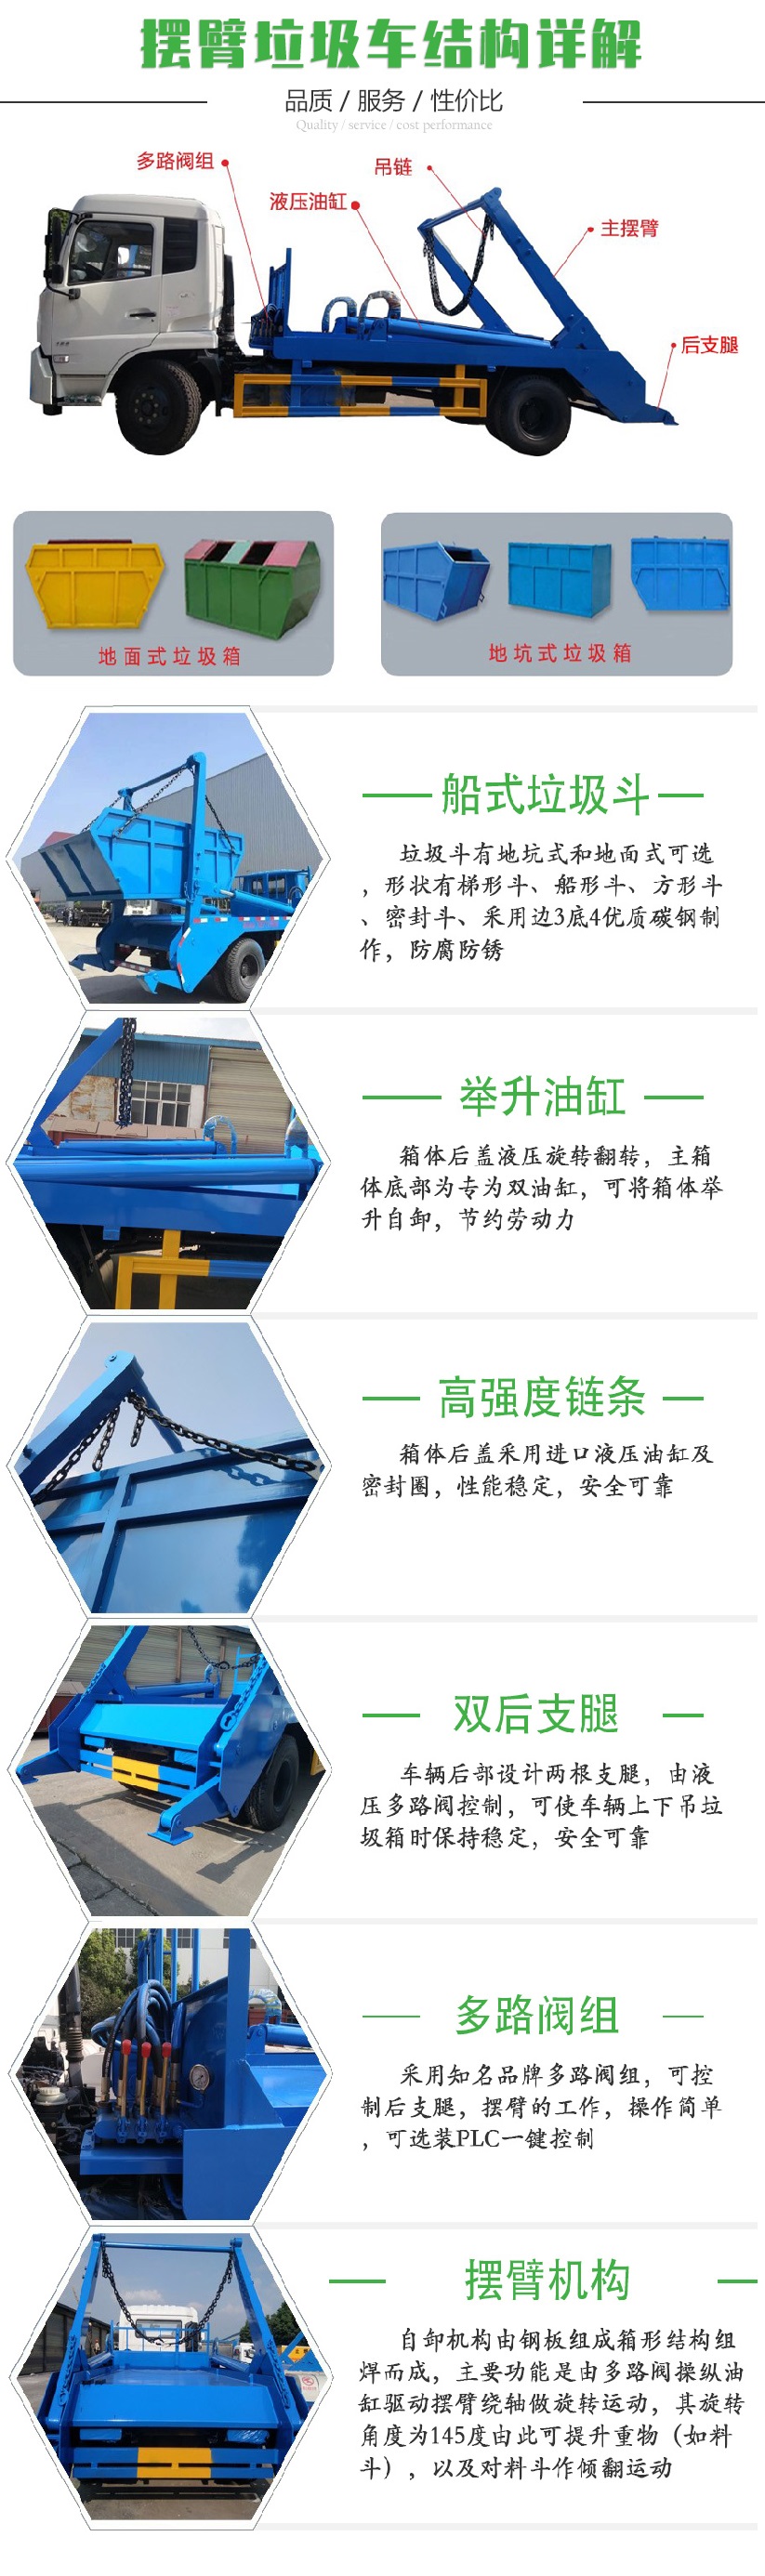 國六東風小(xiǎo)多利卡 3~4方 擺臂垃圾車(chē)